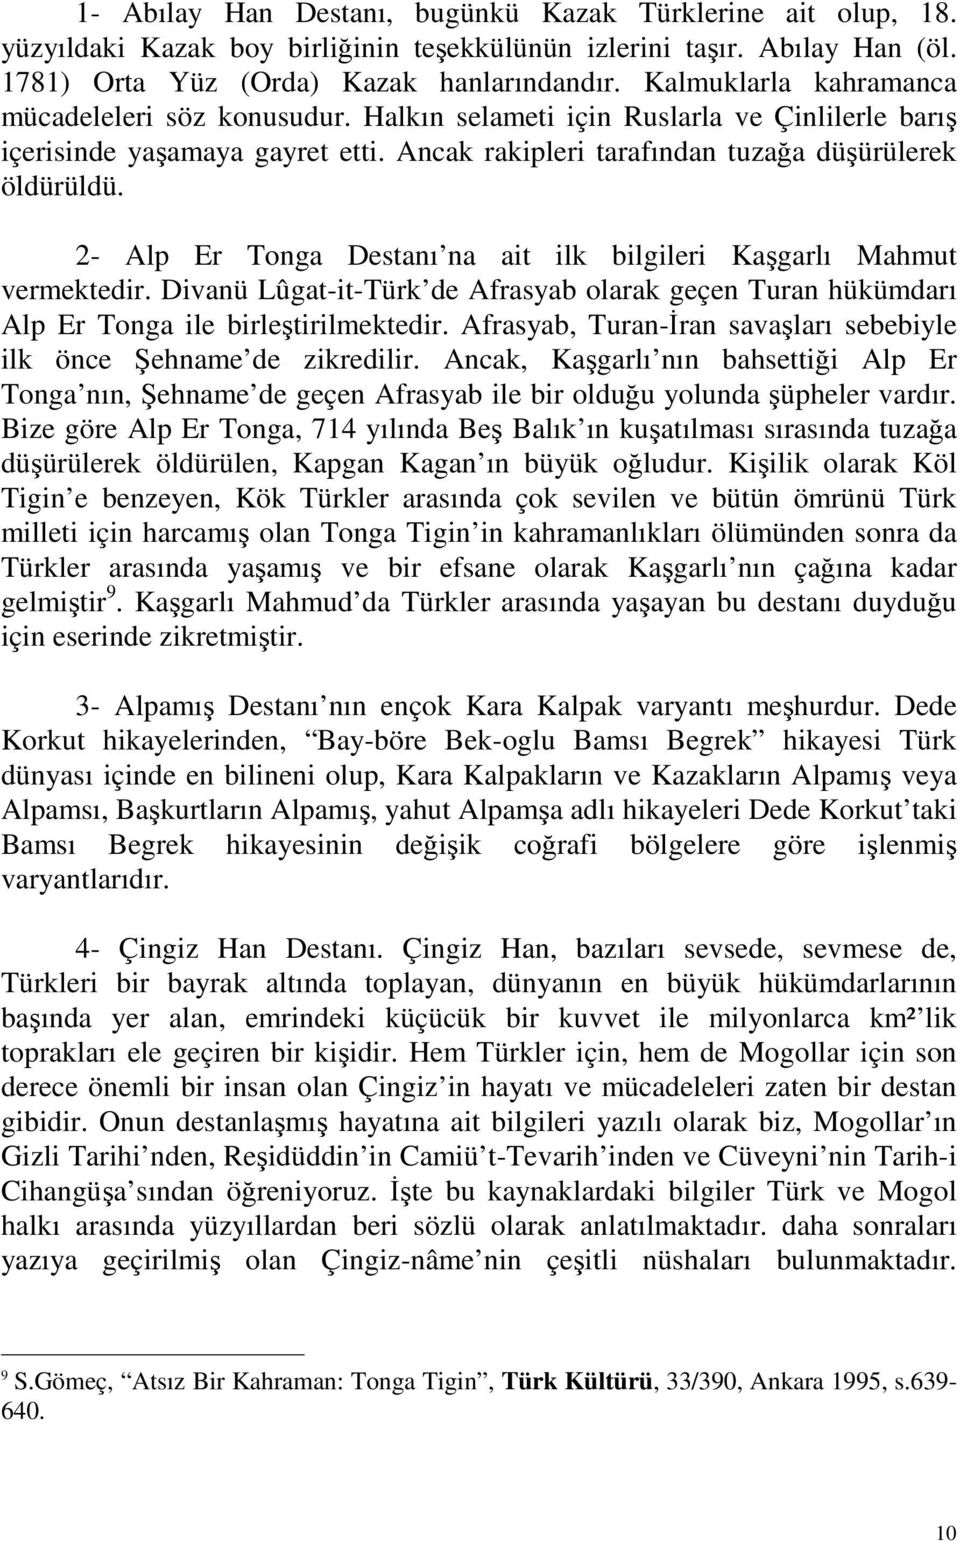 2- Alp Er Tonga Destanı na ait ilk bilgileri Kaşgarlı Mahmut vermektedir. Divanü Lûgat-it-Türk de Afrasyab olarak geçen Turan hükümdarı Alp Er Tonga ile birleştirilmektedir.